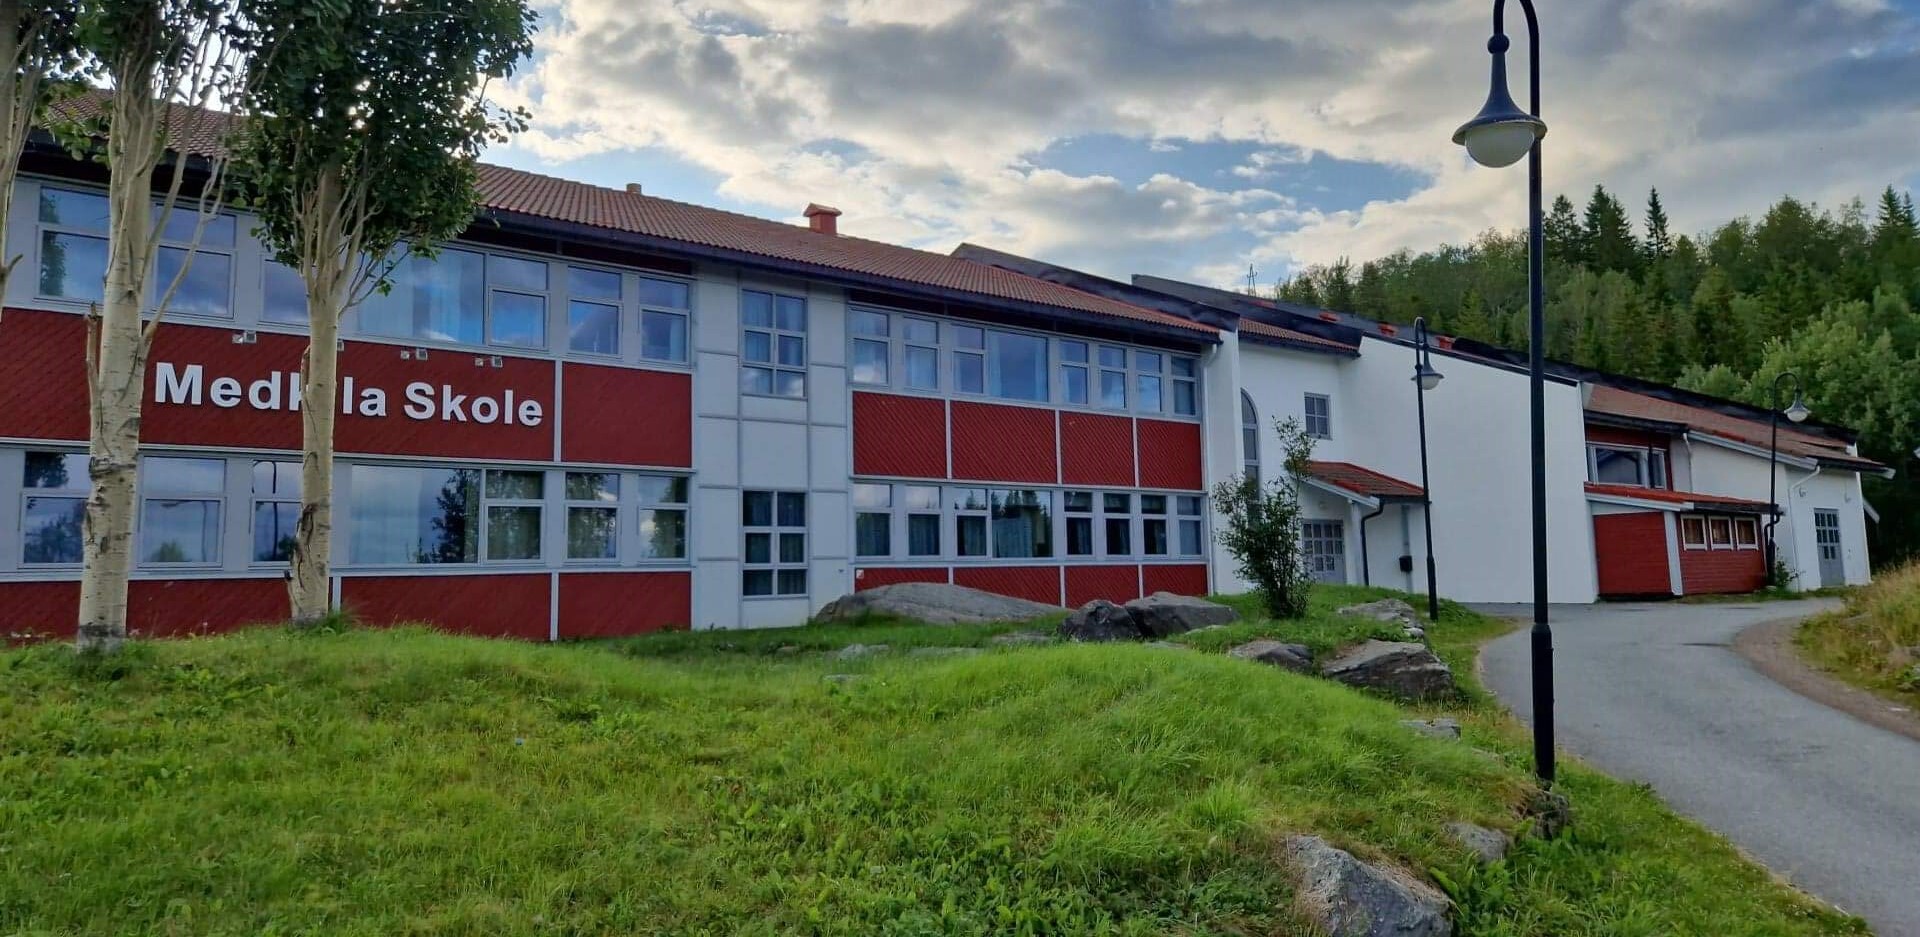 Harstad kommune Medkila skole SFO